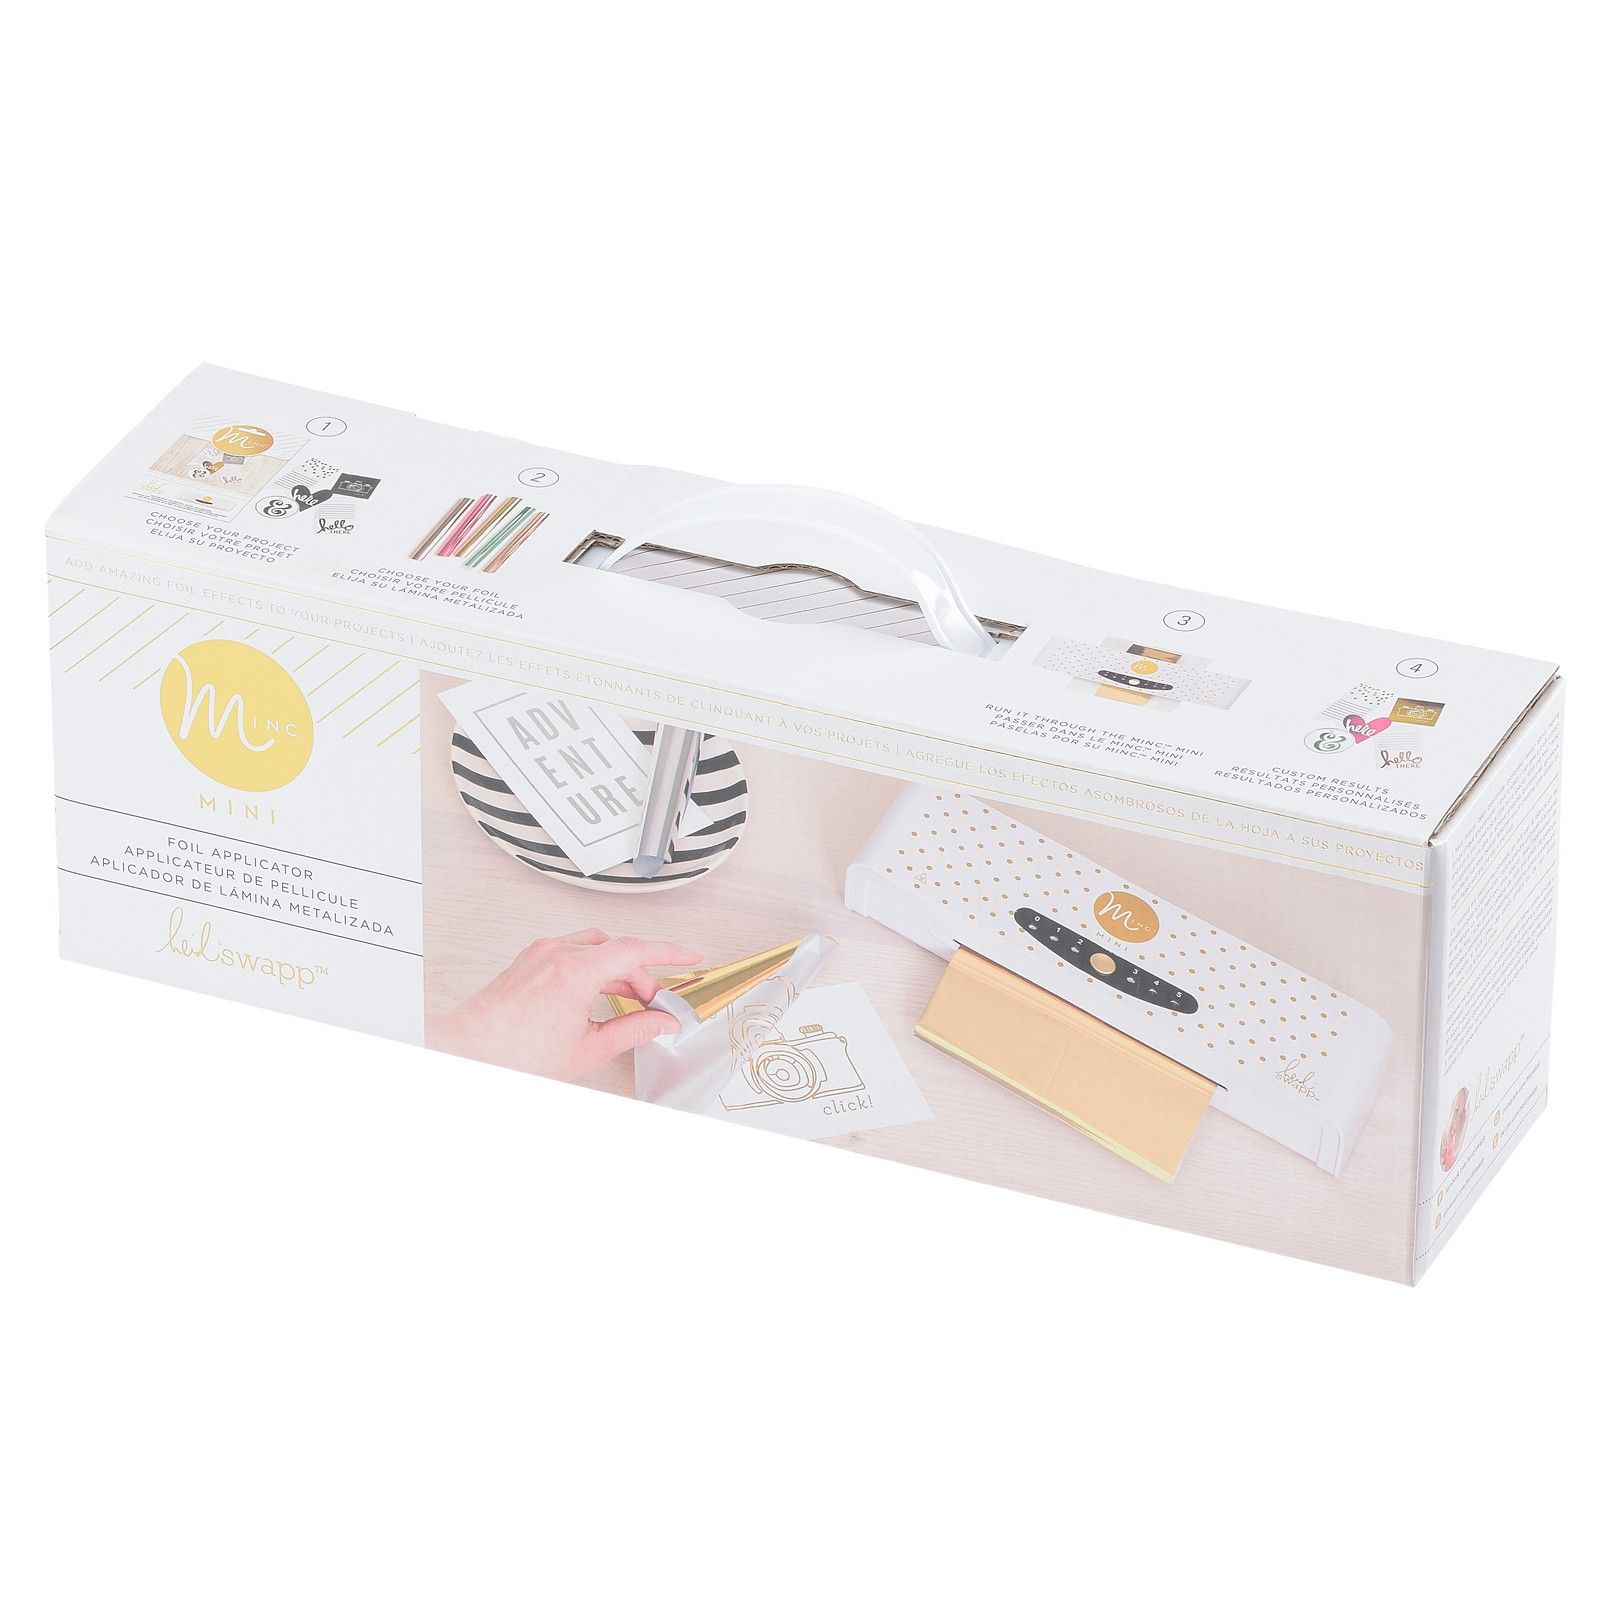 Heidi Swapp™ White Minc Foil Applicator & Starter Kit